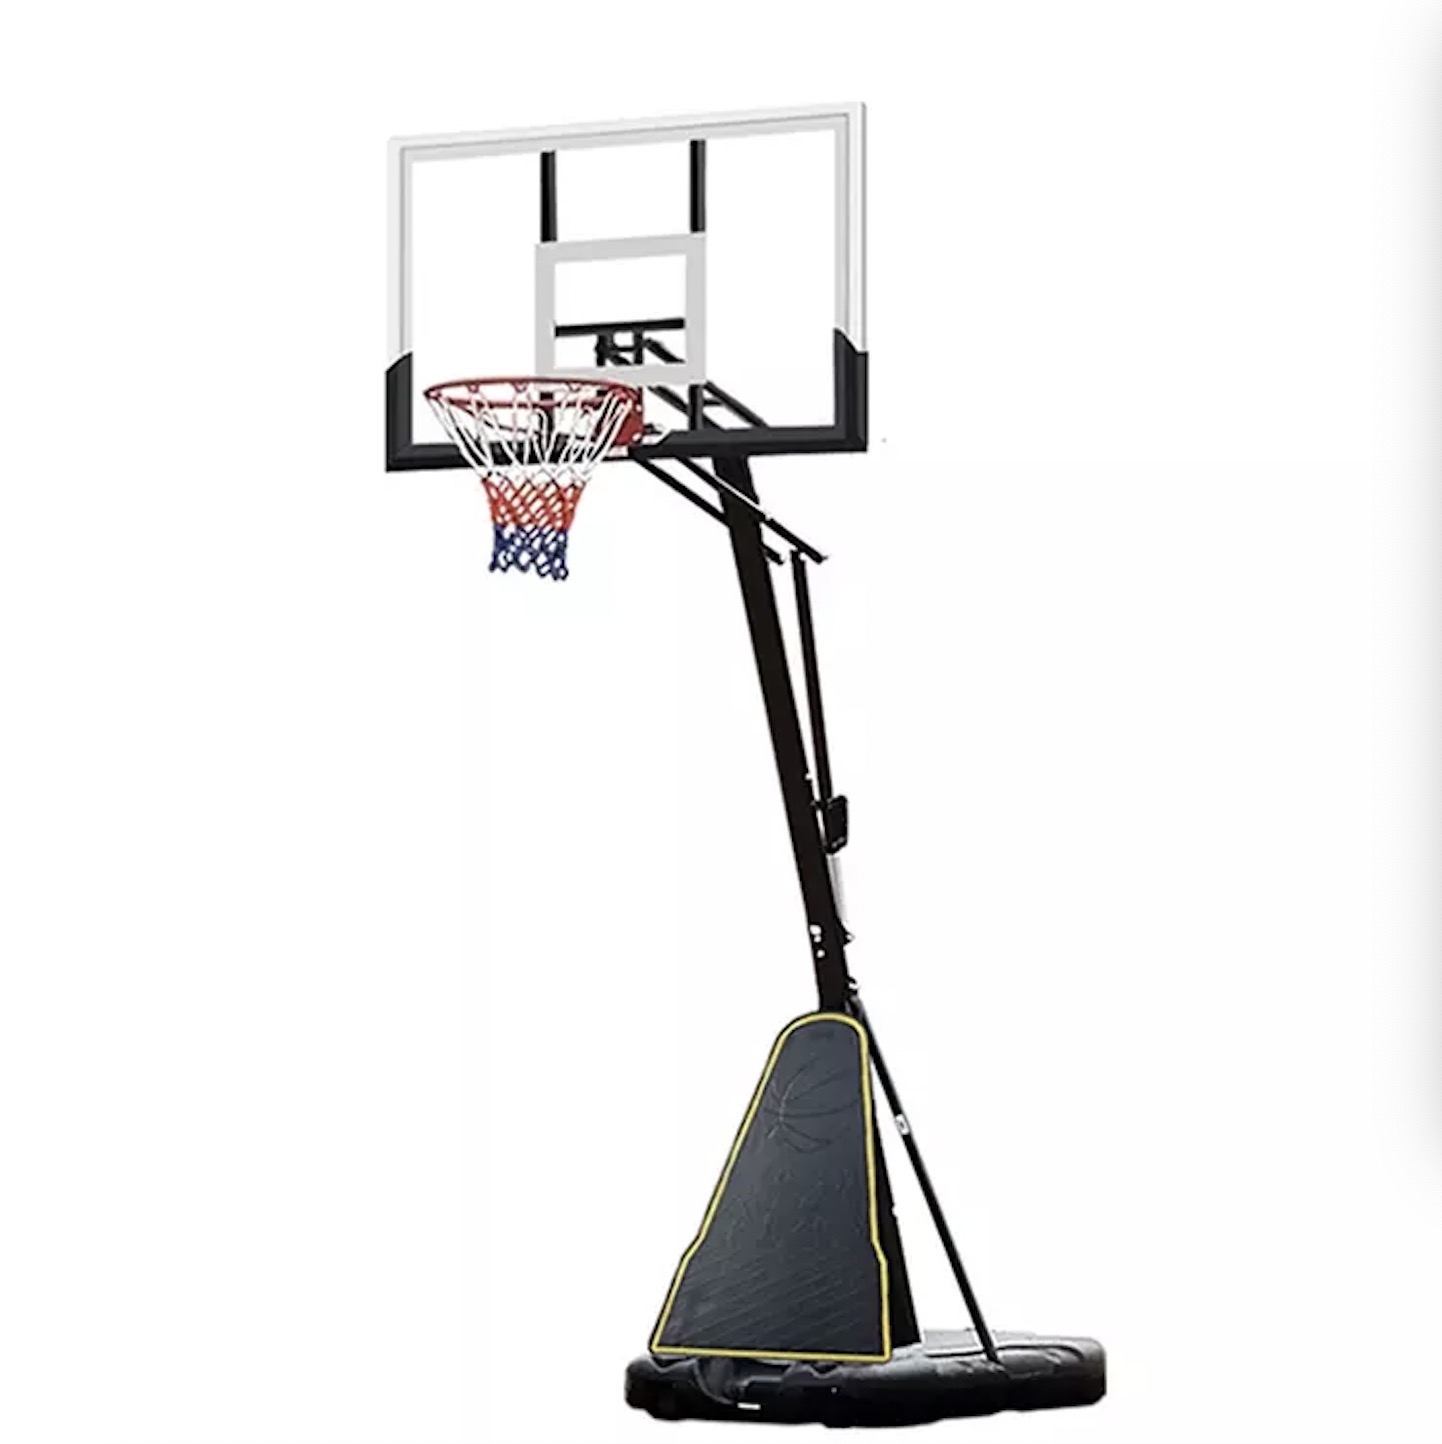 54" backboard nwere iwe ọkụ Dunk Basketball hoop Basketball guzoro 5v5 asọmpi n'okporo ámá basketball n'èzí ibughari